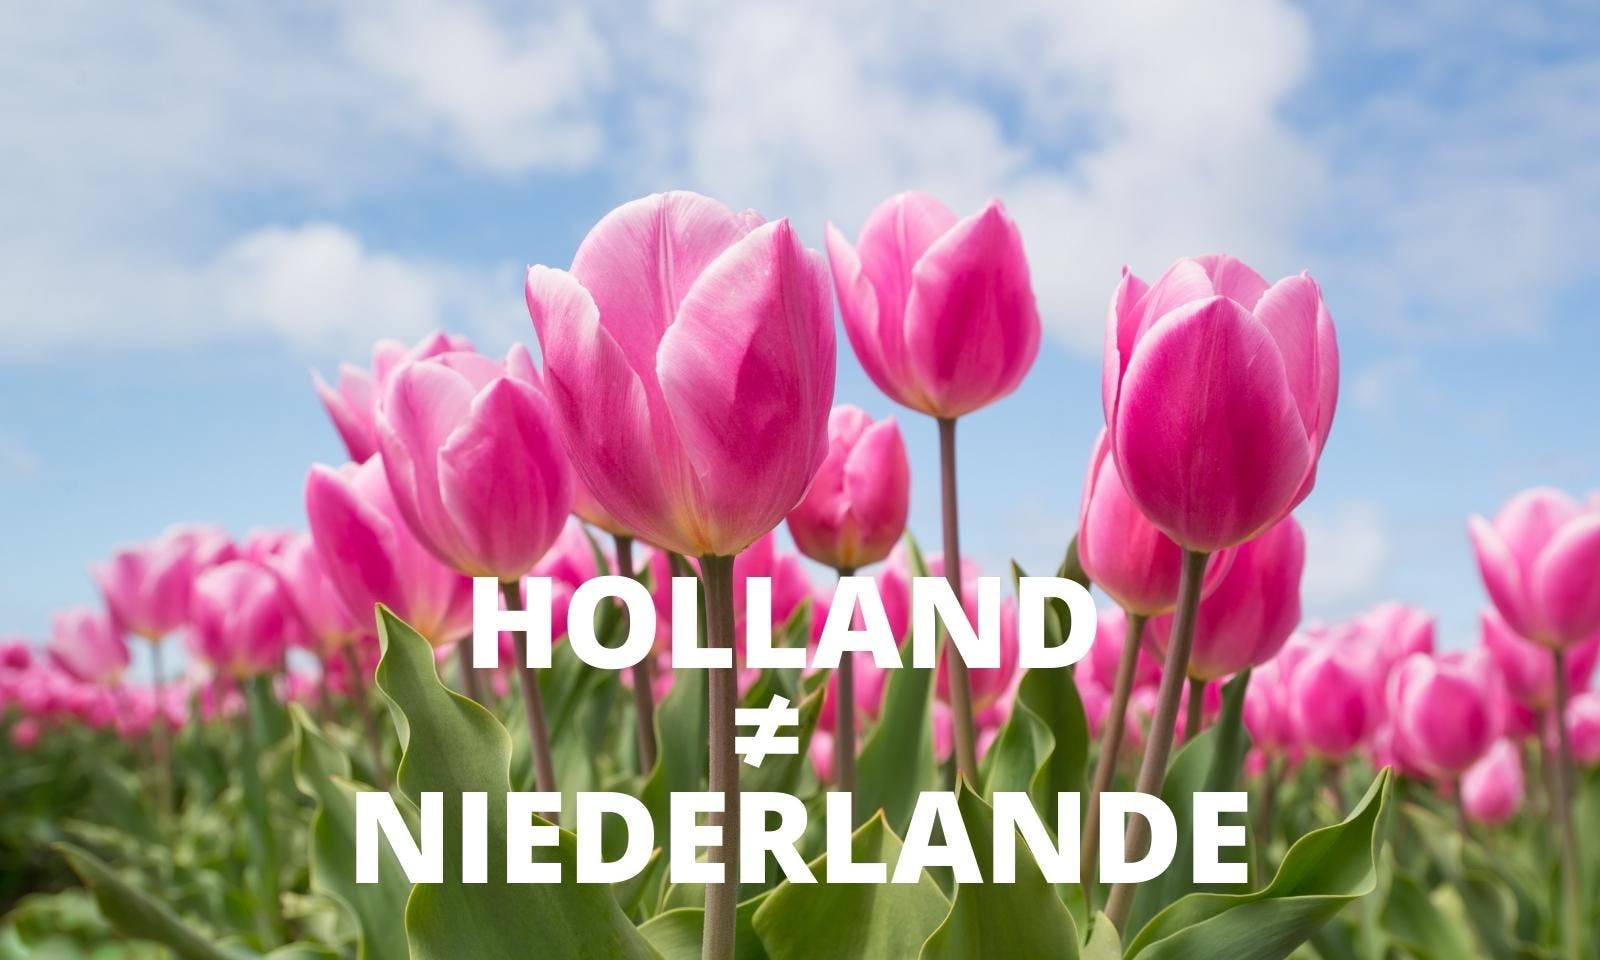 Holland ist nicht gleich Niederlande